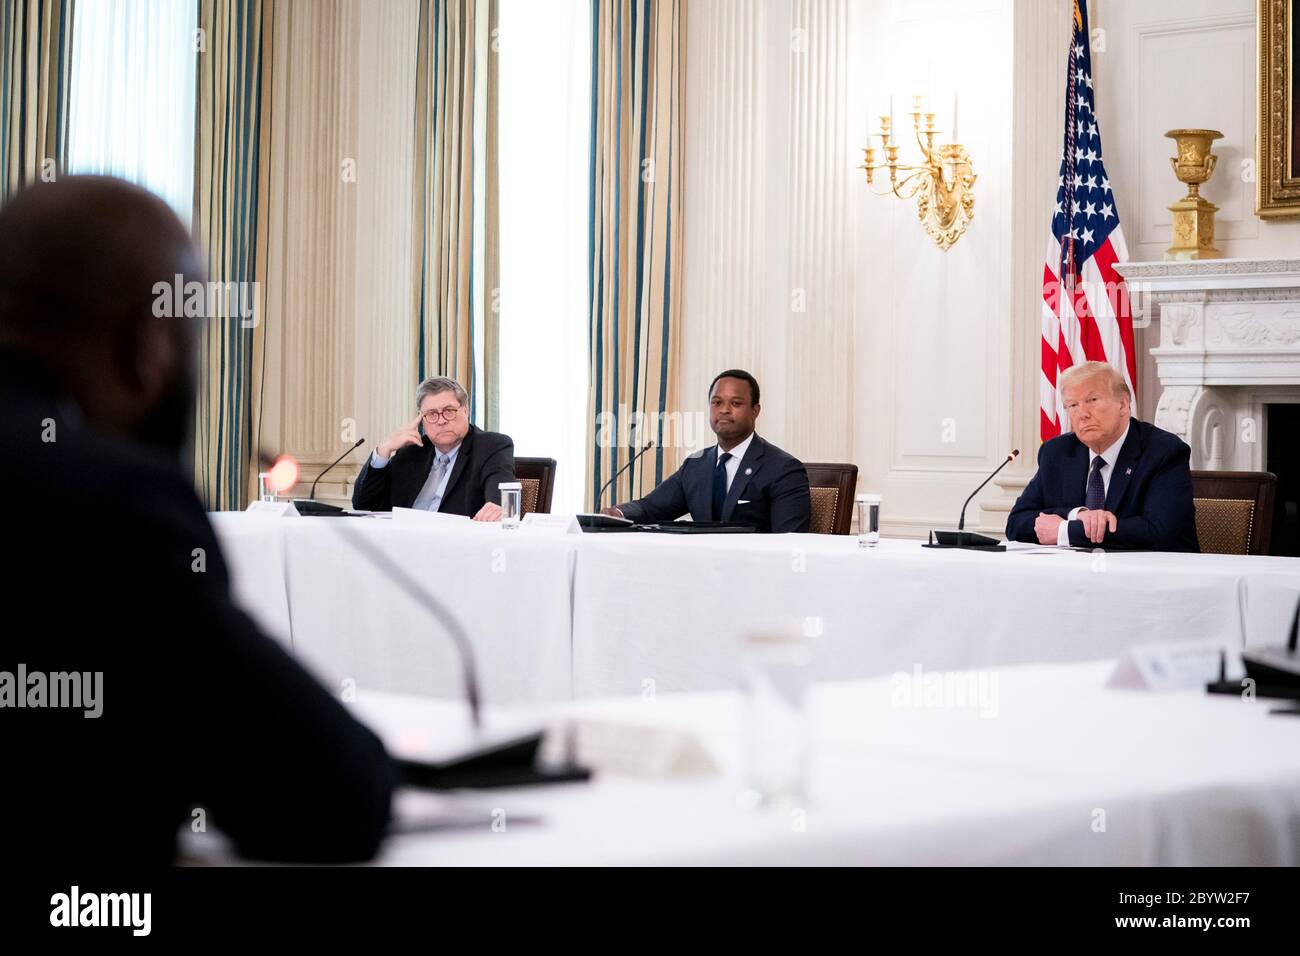 Il presidente degli Stati Uniti Donald Trump, al centro, ascolta le osservazioni durante una tavola rotonda con le forze dell'ordine nella Sala da pranzo dello Stato della Casa Bianca 8 giugno 2020 a Washington, D.C. durante l'evento, Trump ha sostenuto la polizia sulle proteste in corso per la materia Black Lives che hanno spazzato la nazione. Foto Stock